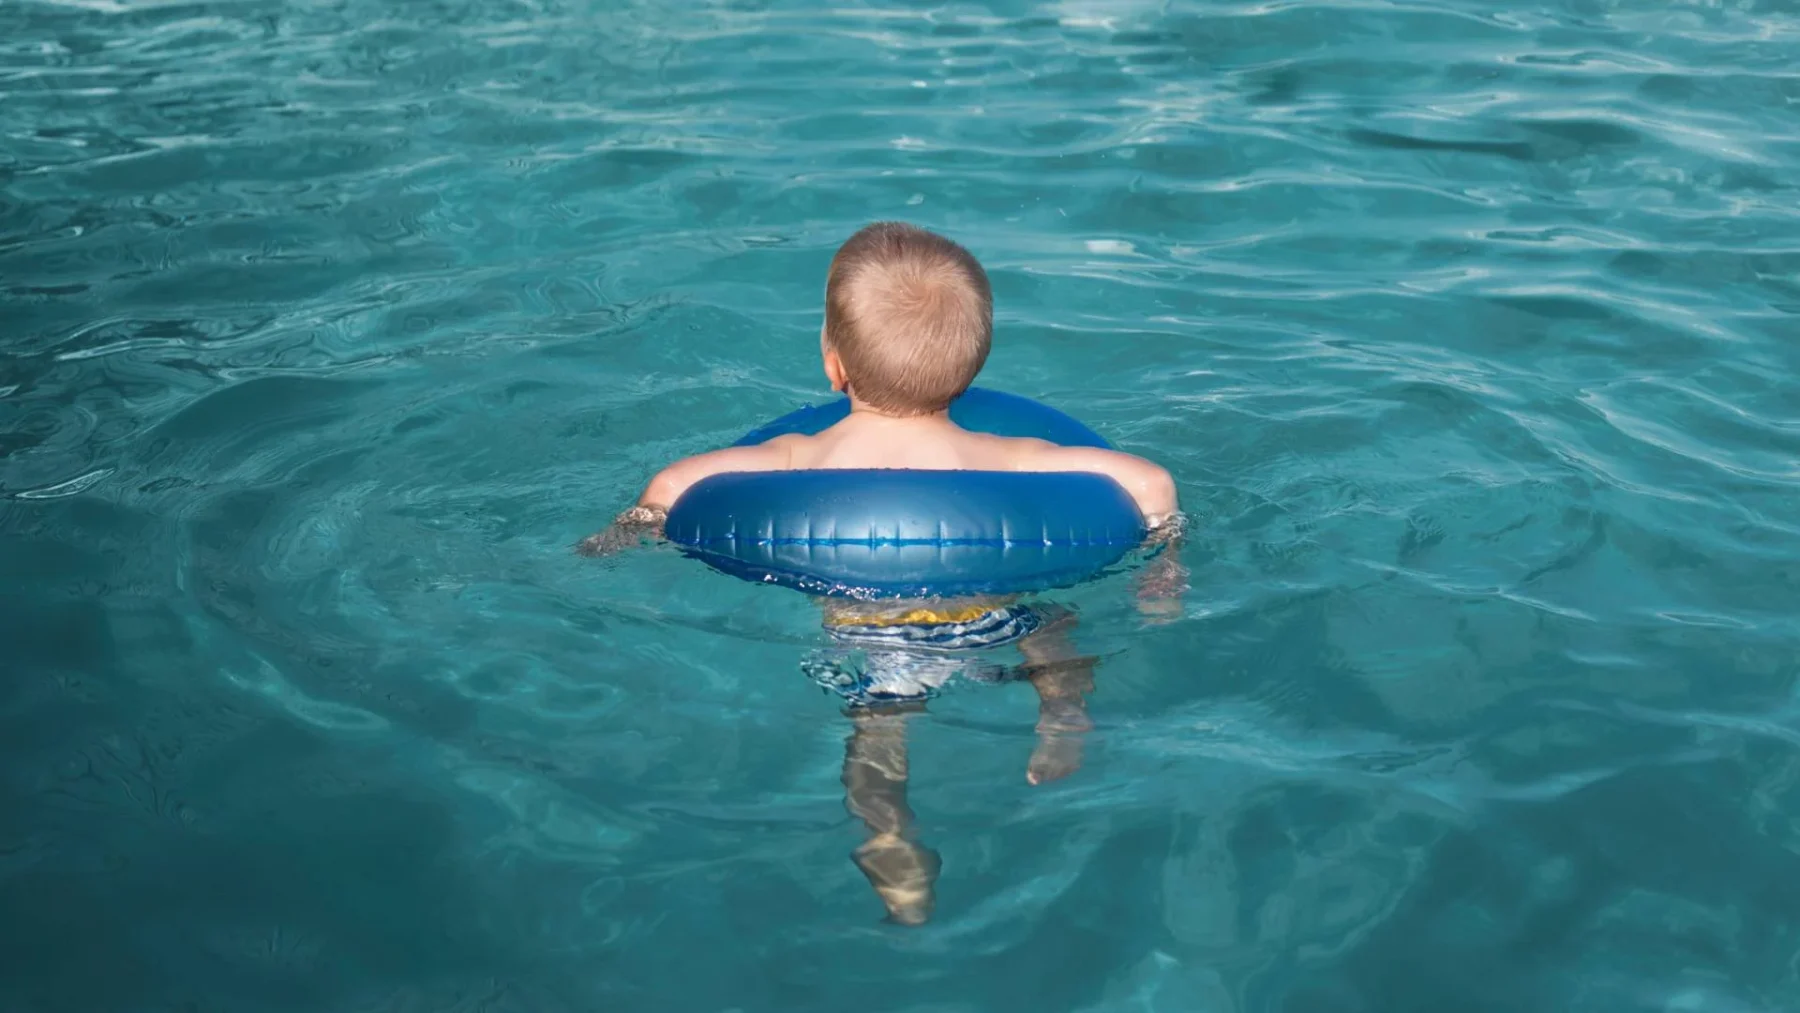 Kind aan het zwemmen